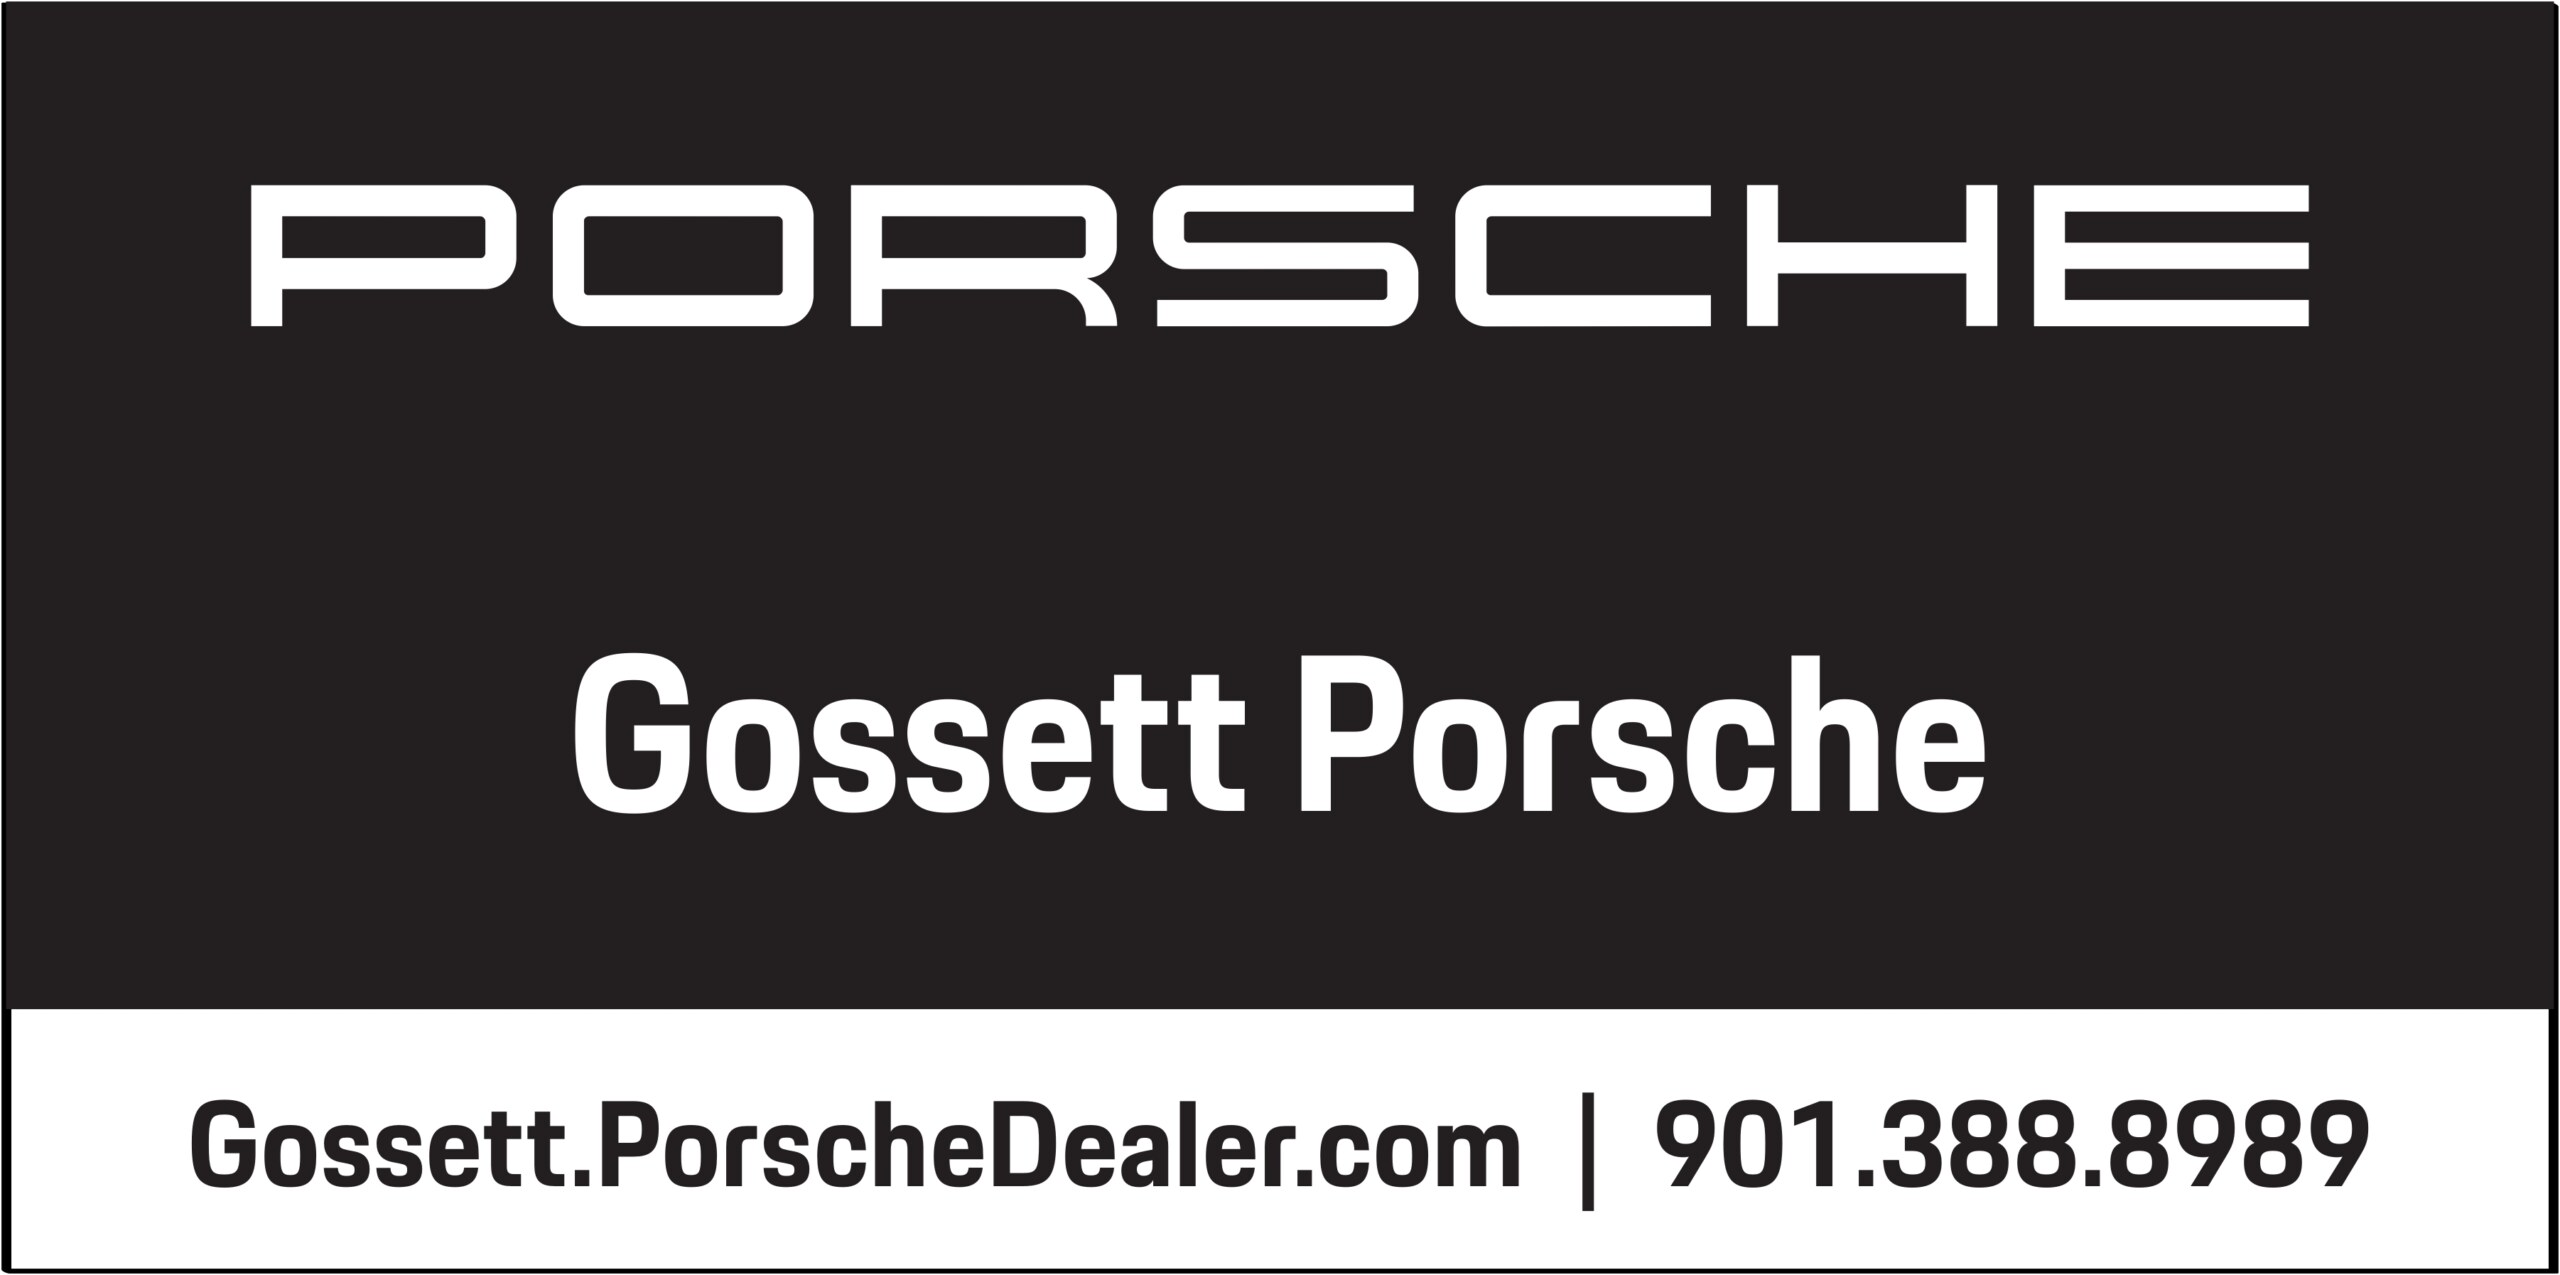 Gossett Porsche